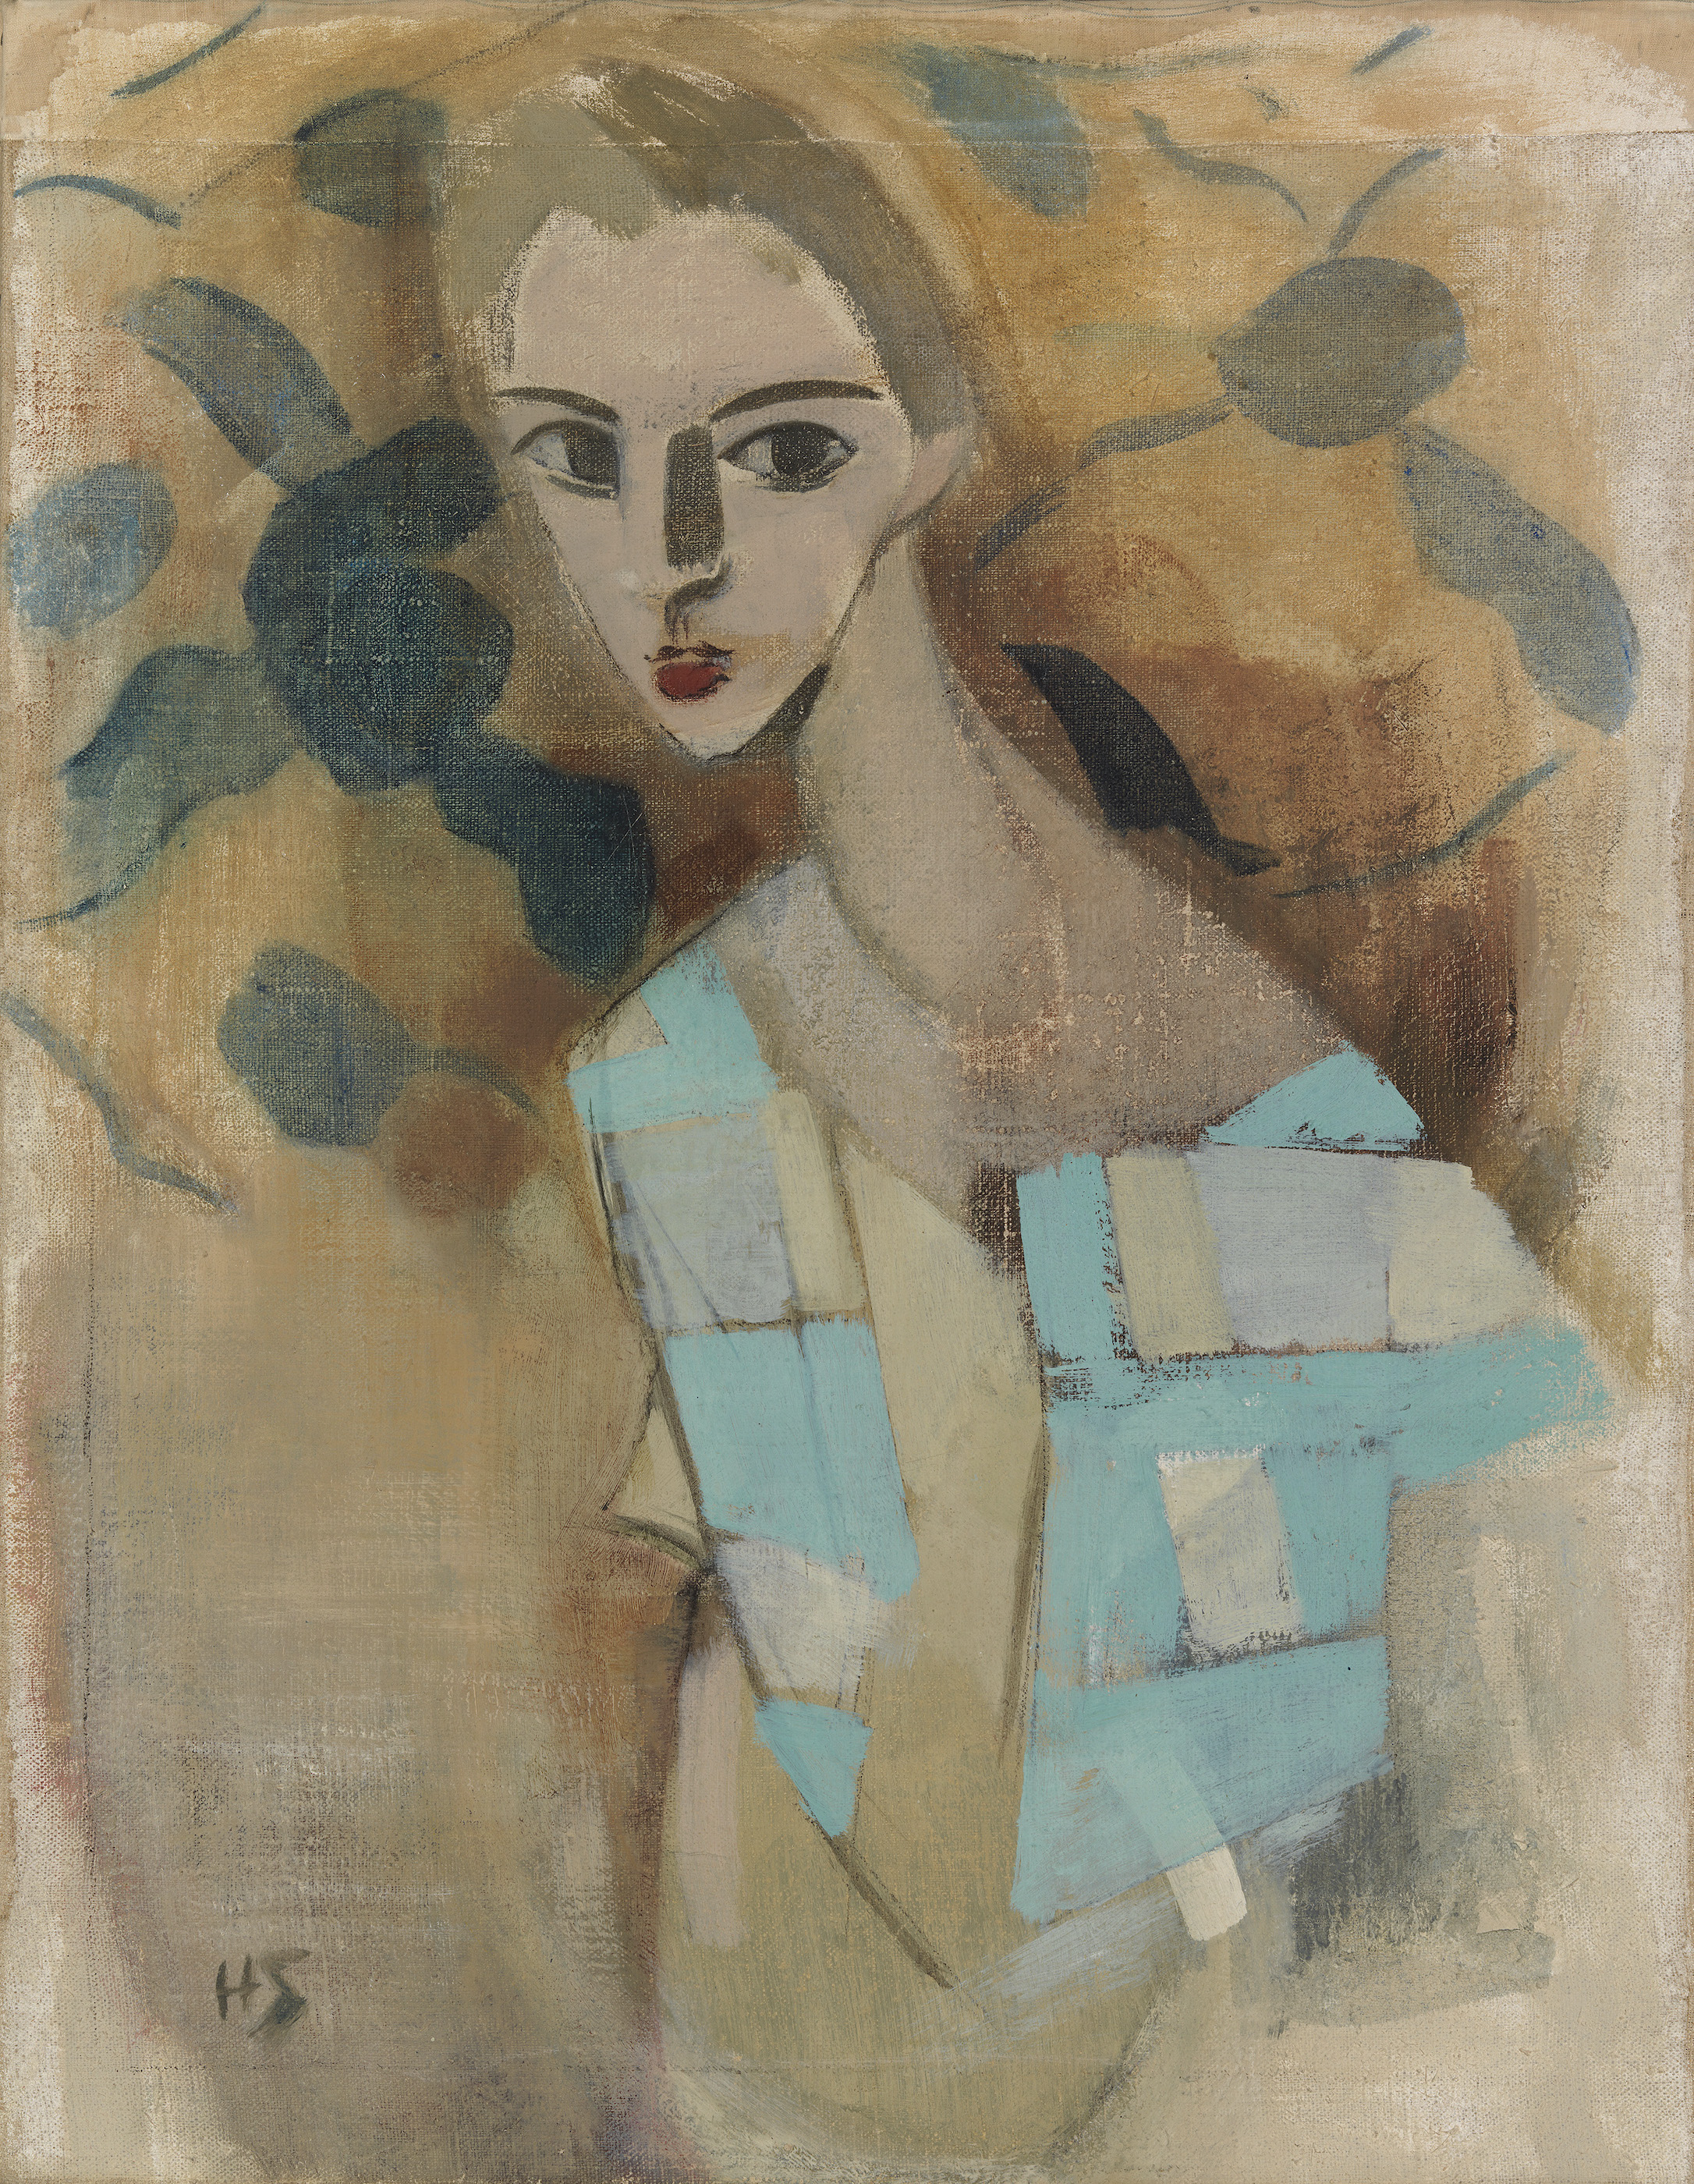 Rapariga de Eydtkuhne II by Helene Schjerfbeck - 1927 - 70 × 54,5 cm 